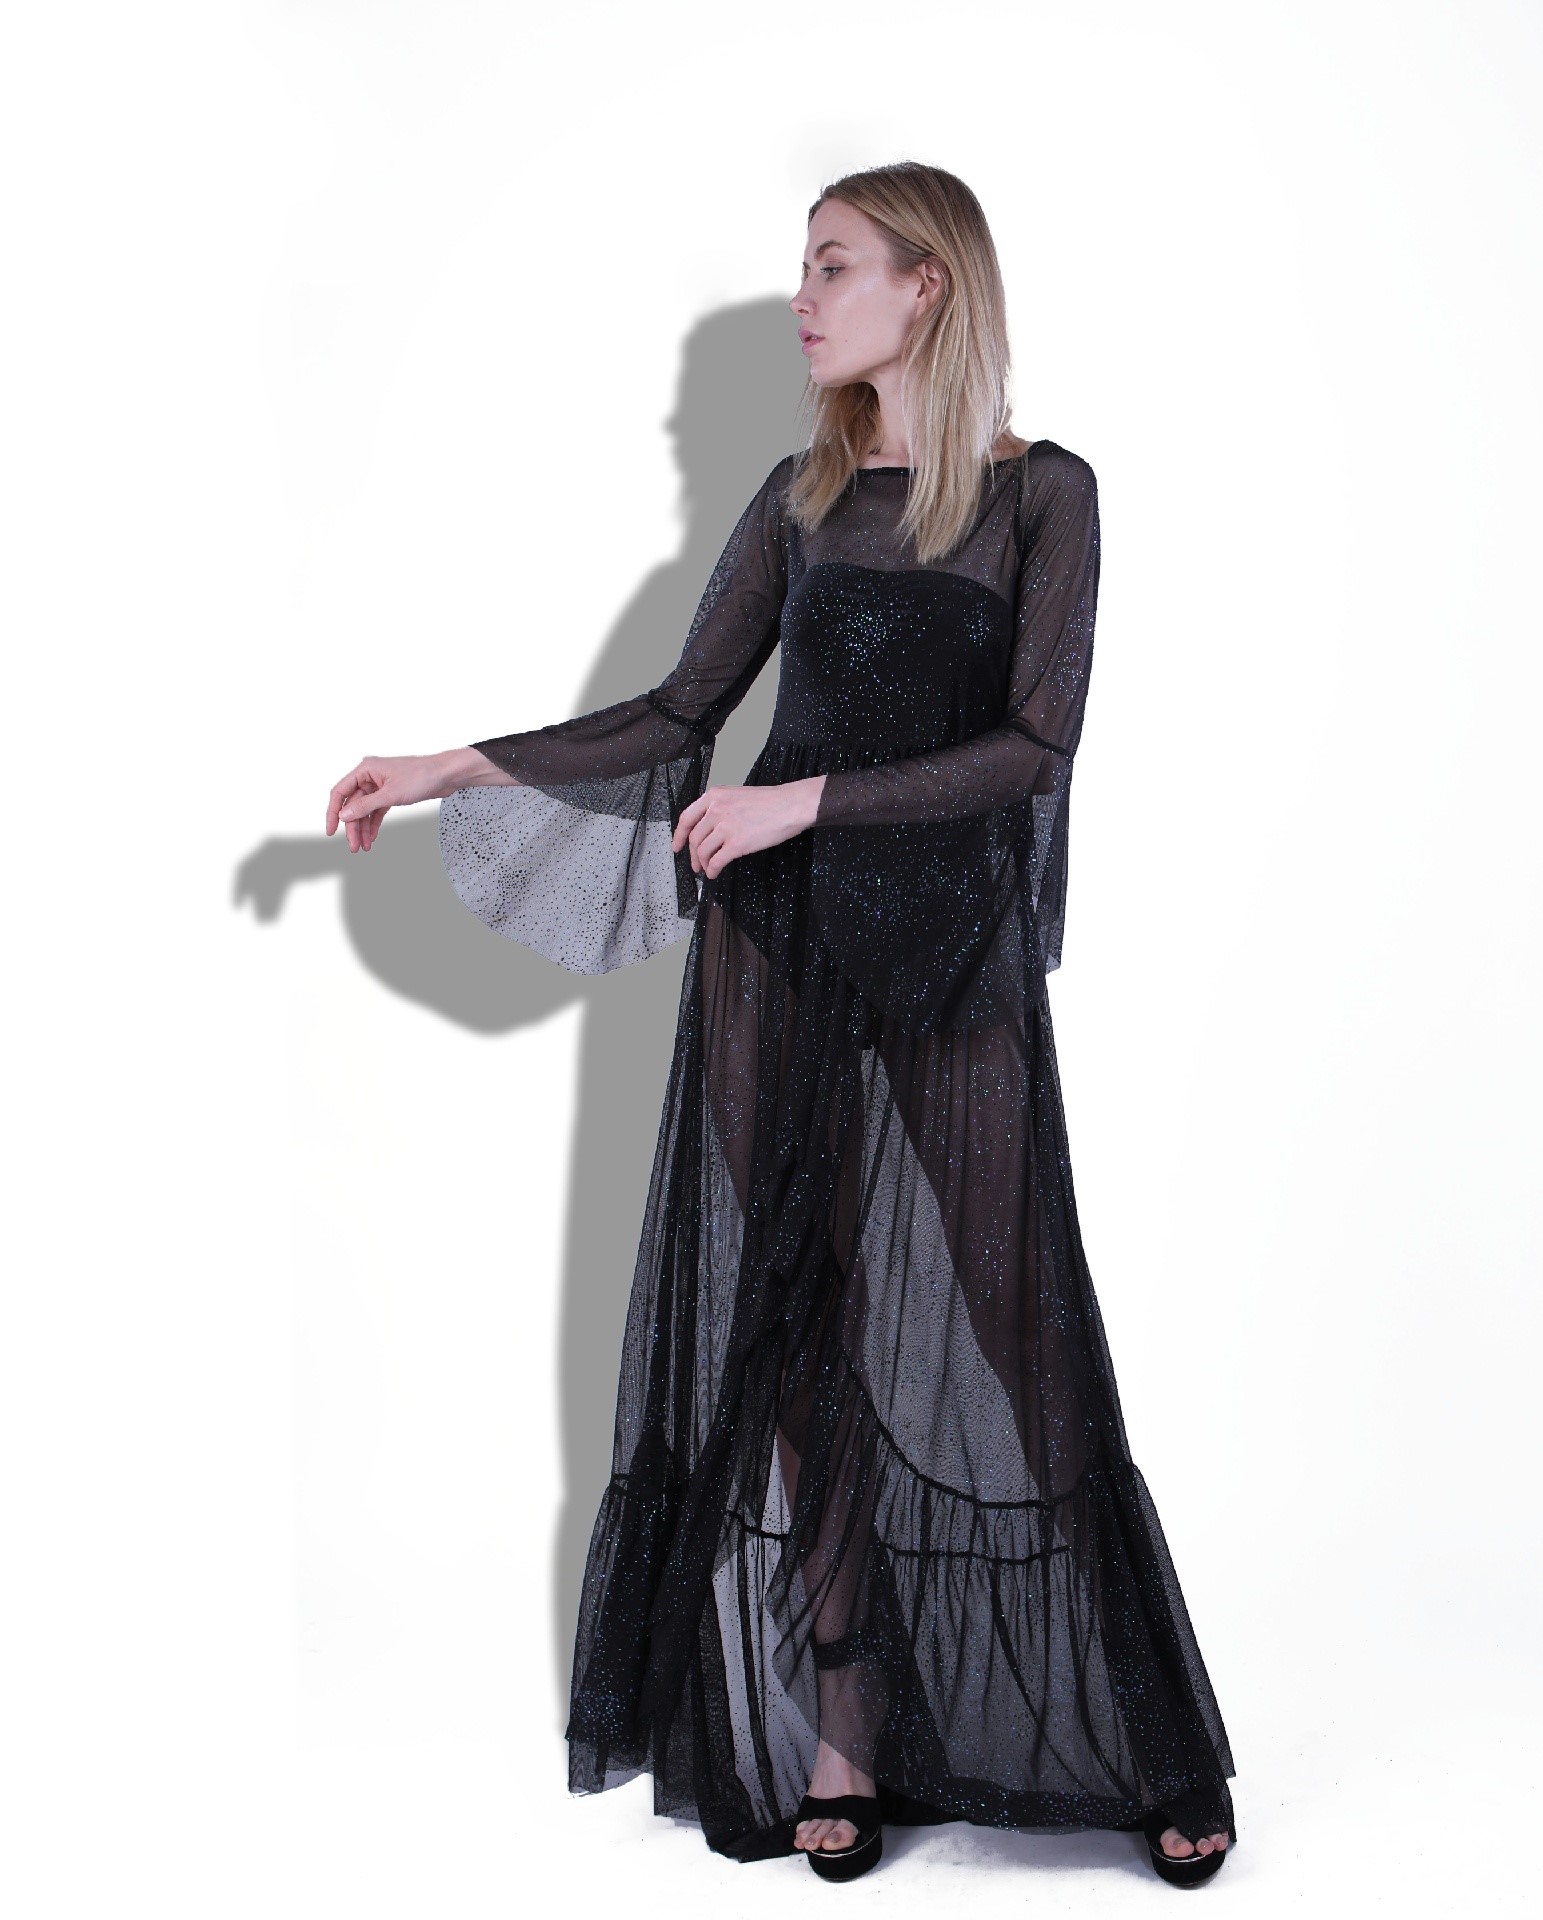 Long Sheer Black Dress on Sale, 53% OFF ...